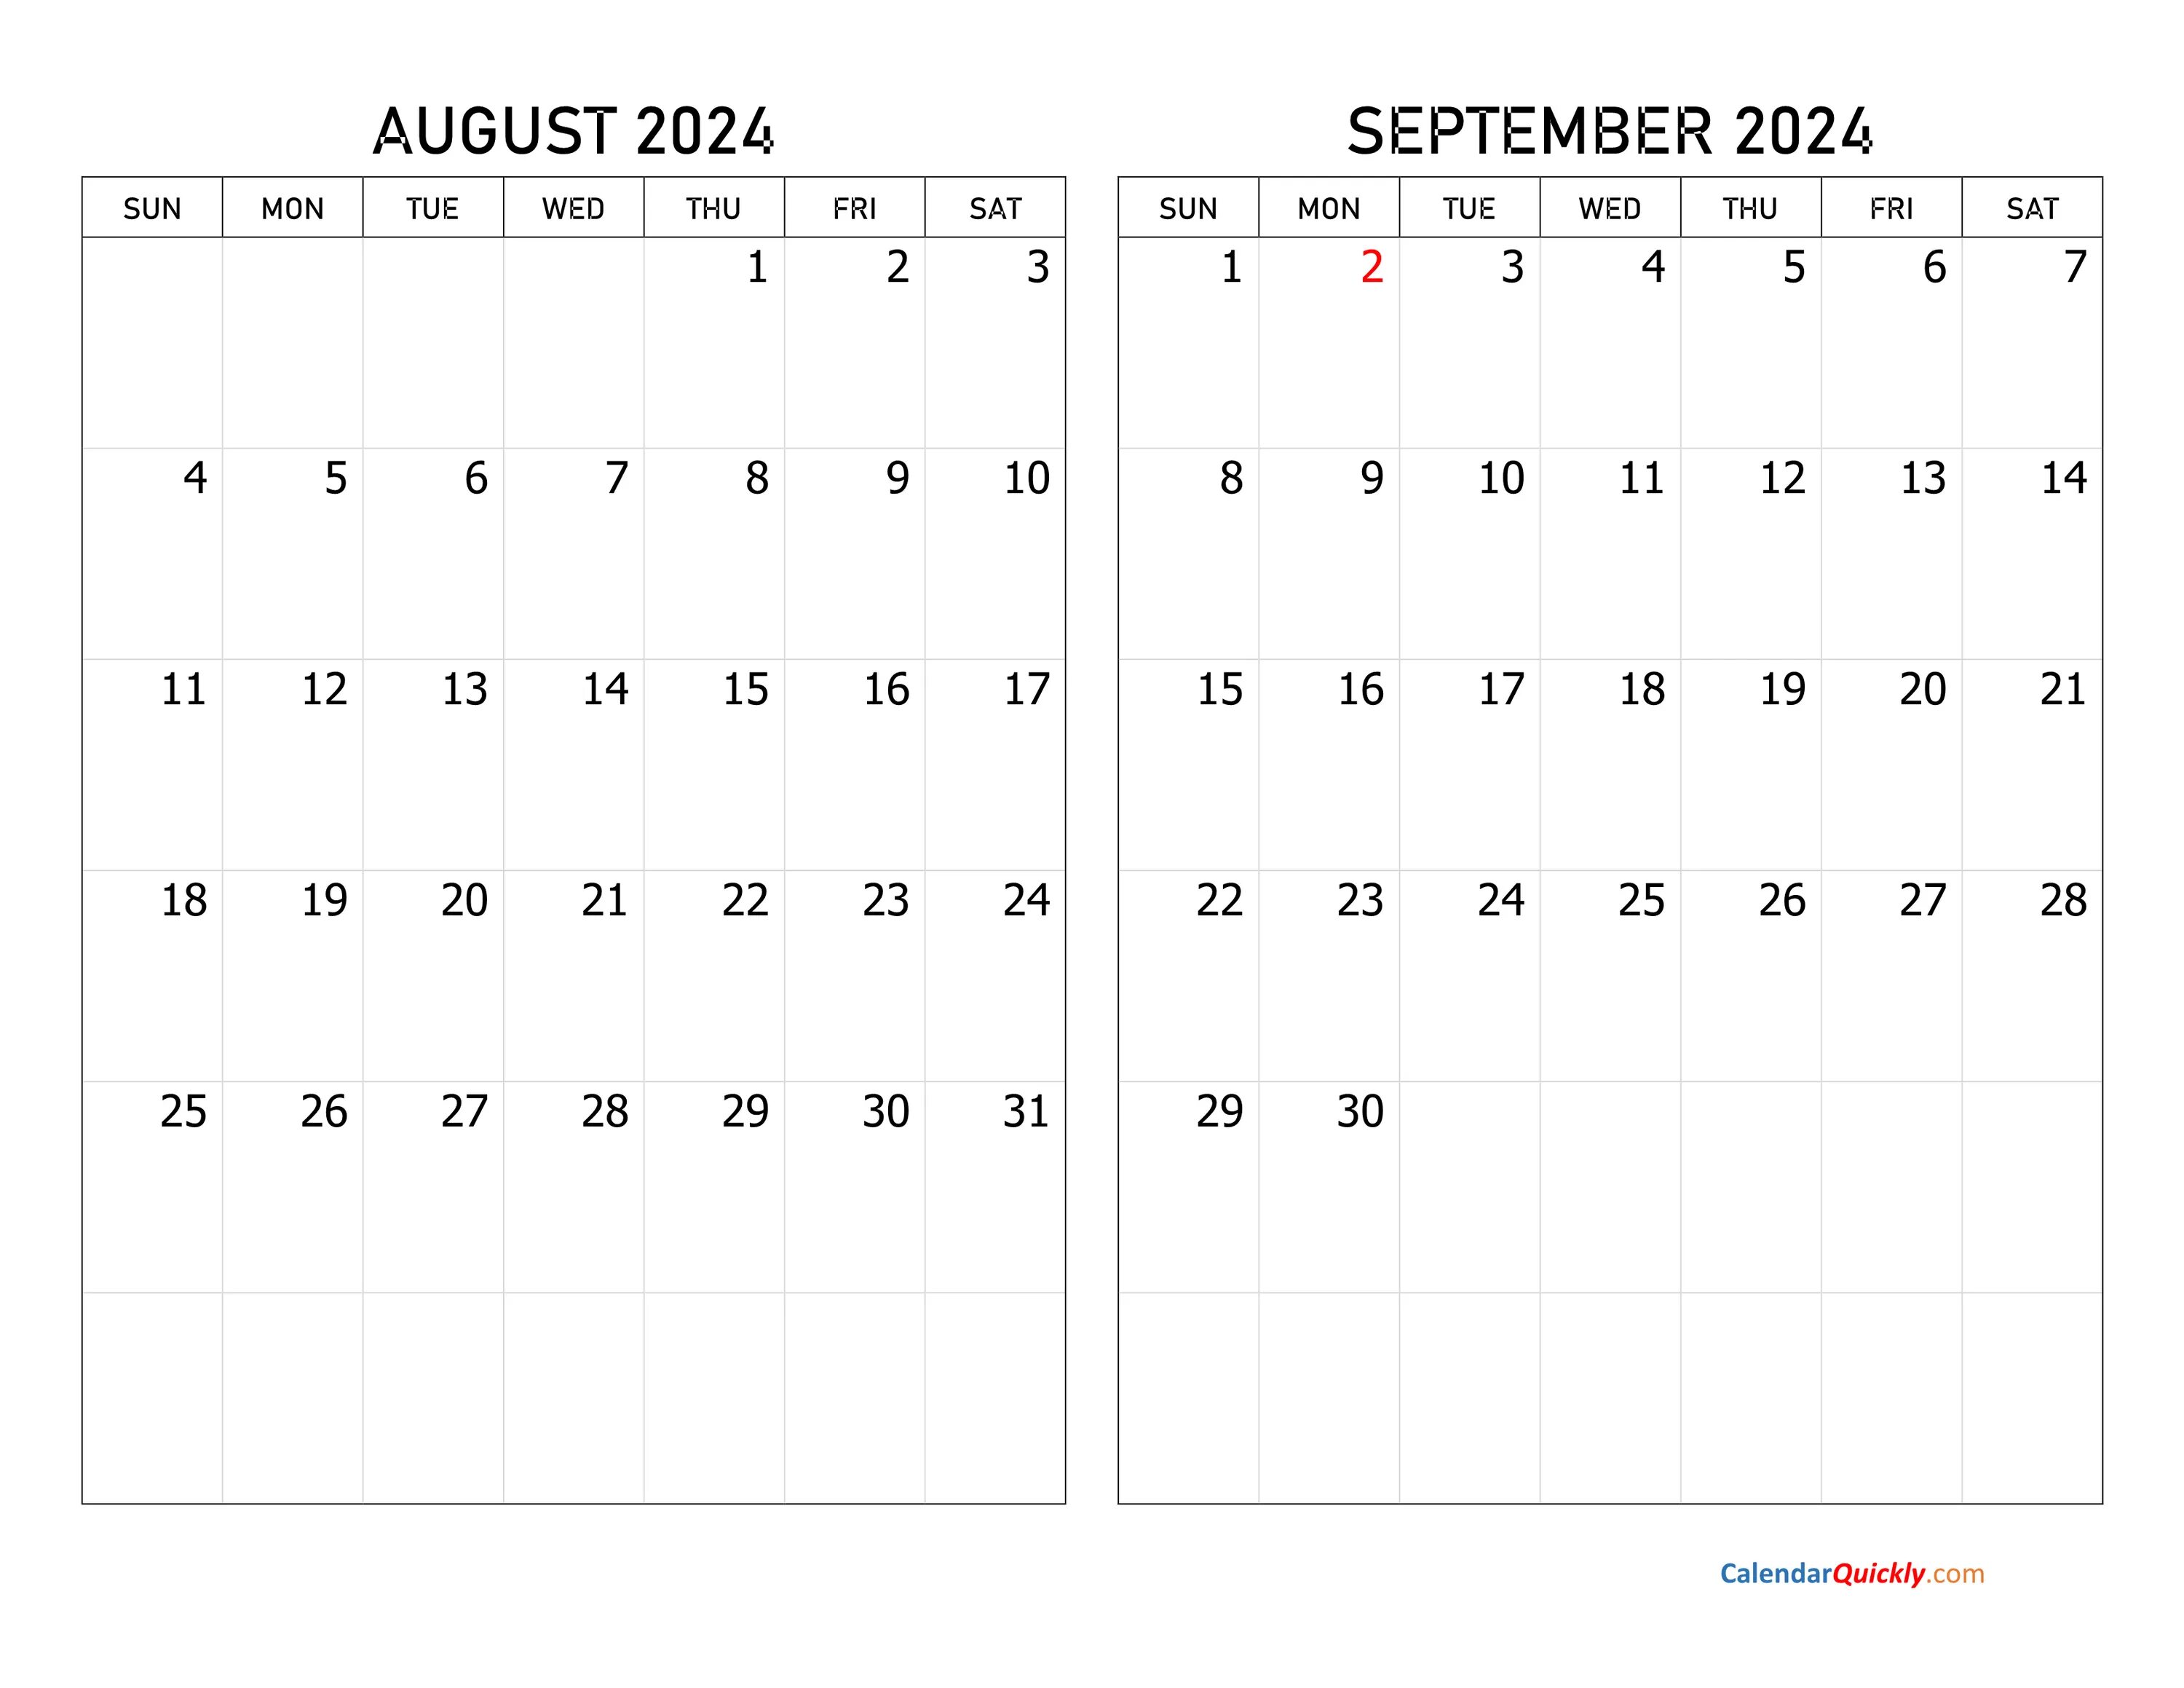 Календарь декабрь 2022. Календарь сентябрь октябрь 2022. Календарь октябрь ноябрь 2022. Календарь декабрь 2022 январь 2023.